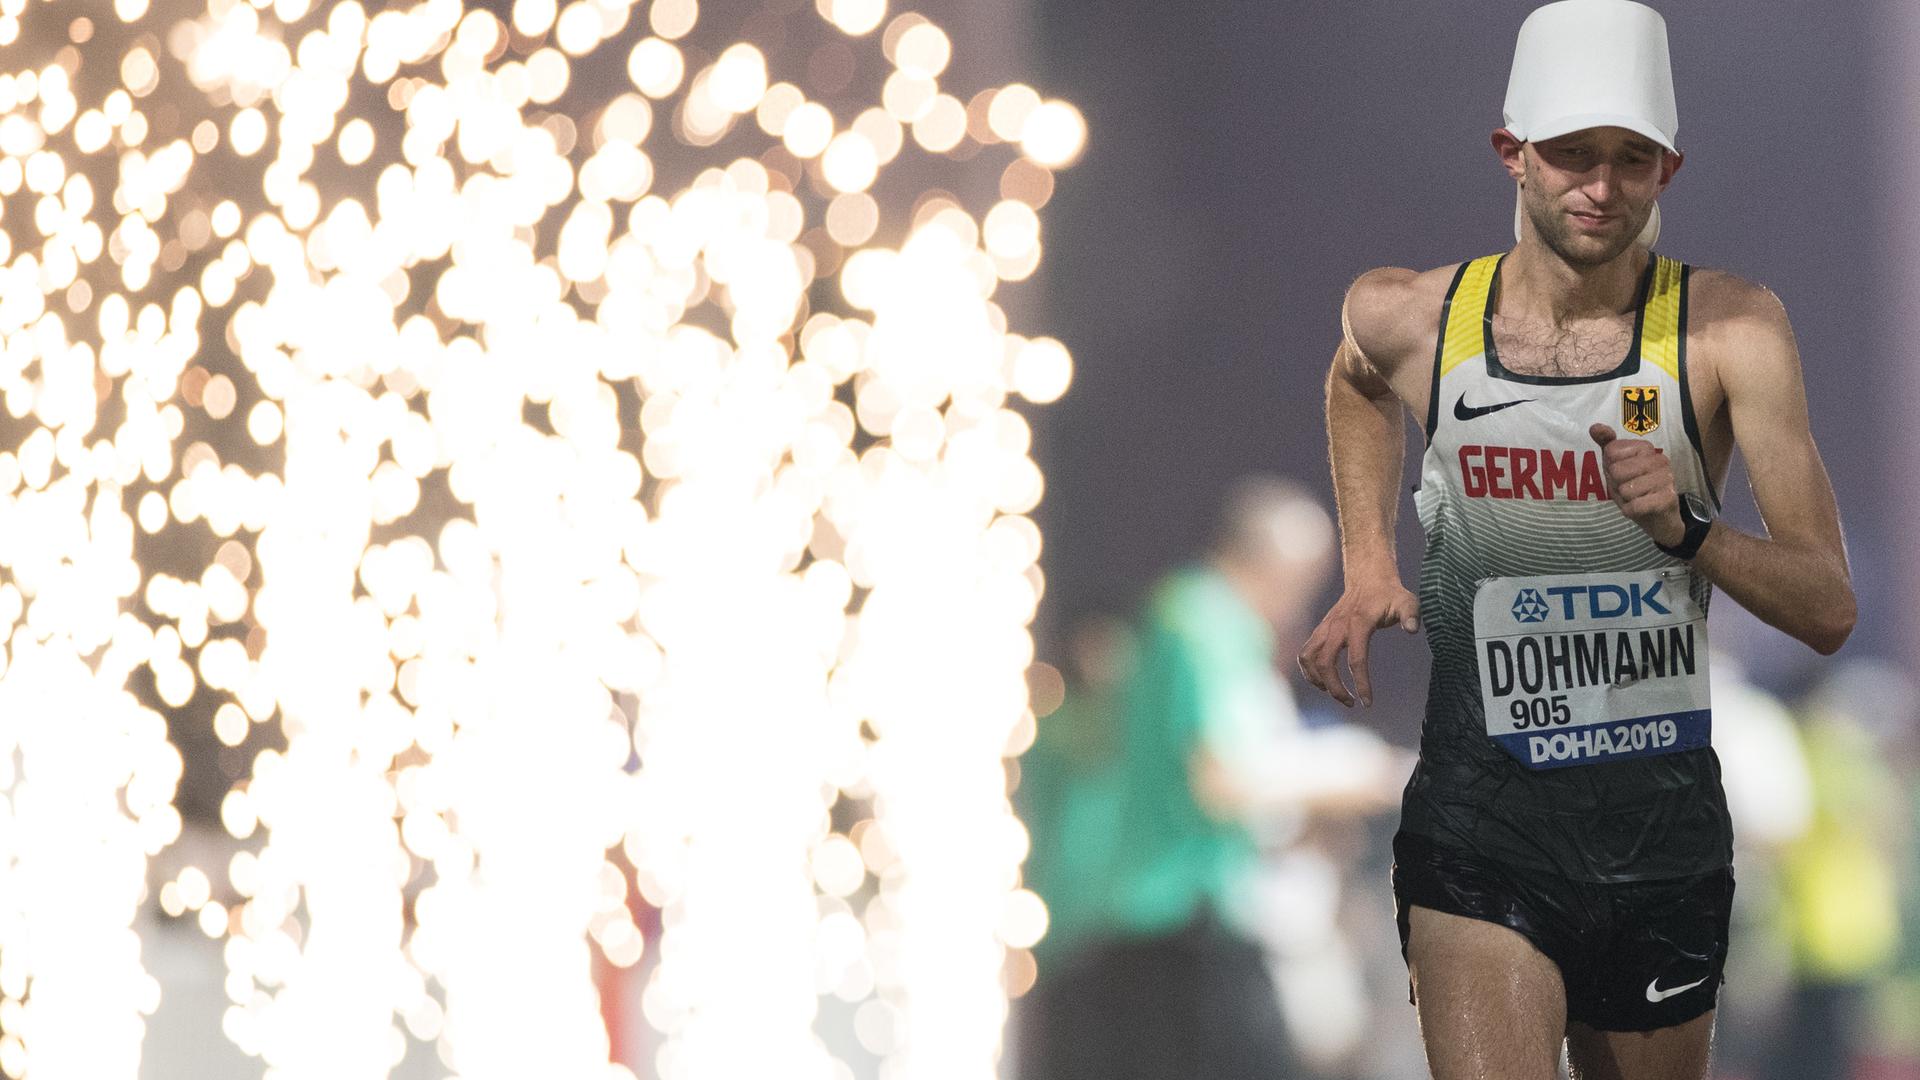 29.09.2019, Katar, Doha: Leichtathletik: Weltmeisterschaft, 50 km Gehen, Männer. Carl Dohmann aus Deutschland beim Zieleinlauf. Foto: Oliver Weiken/dpa +++ dpa-Bildfunk +++ | Verwendung weltweit